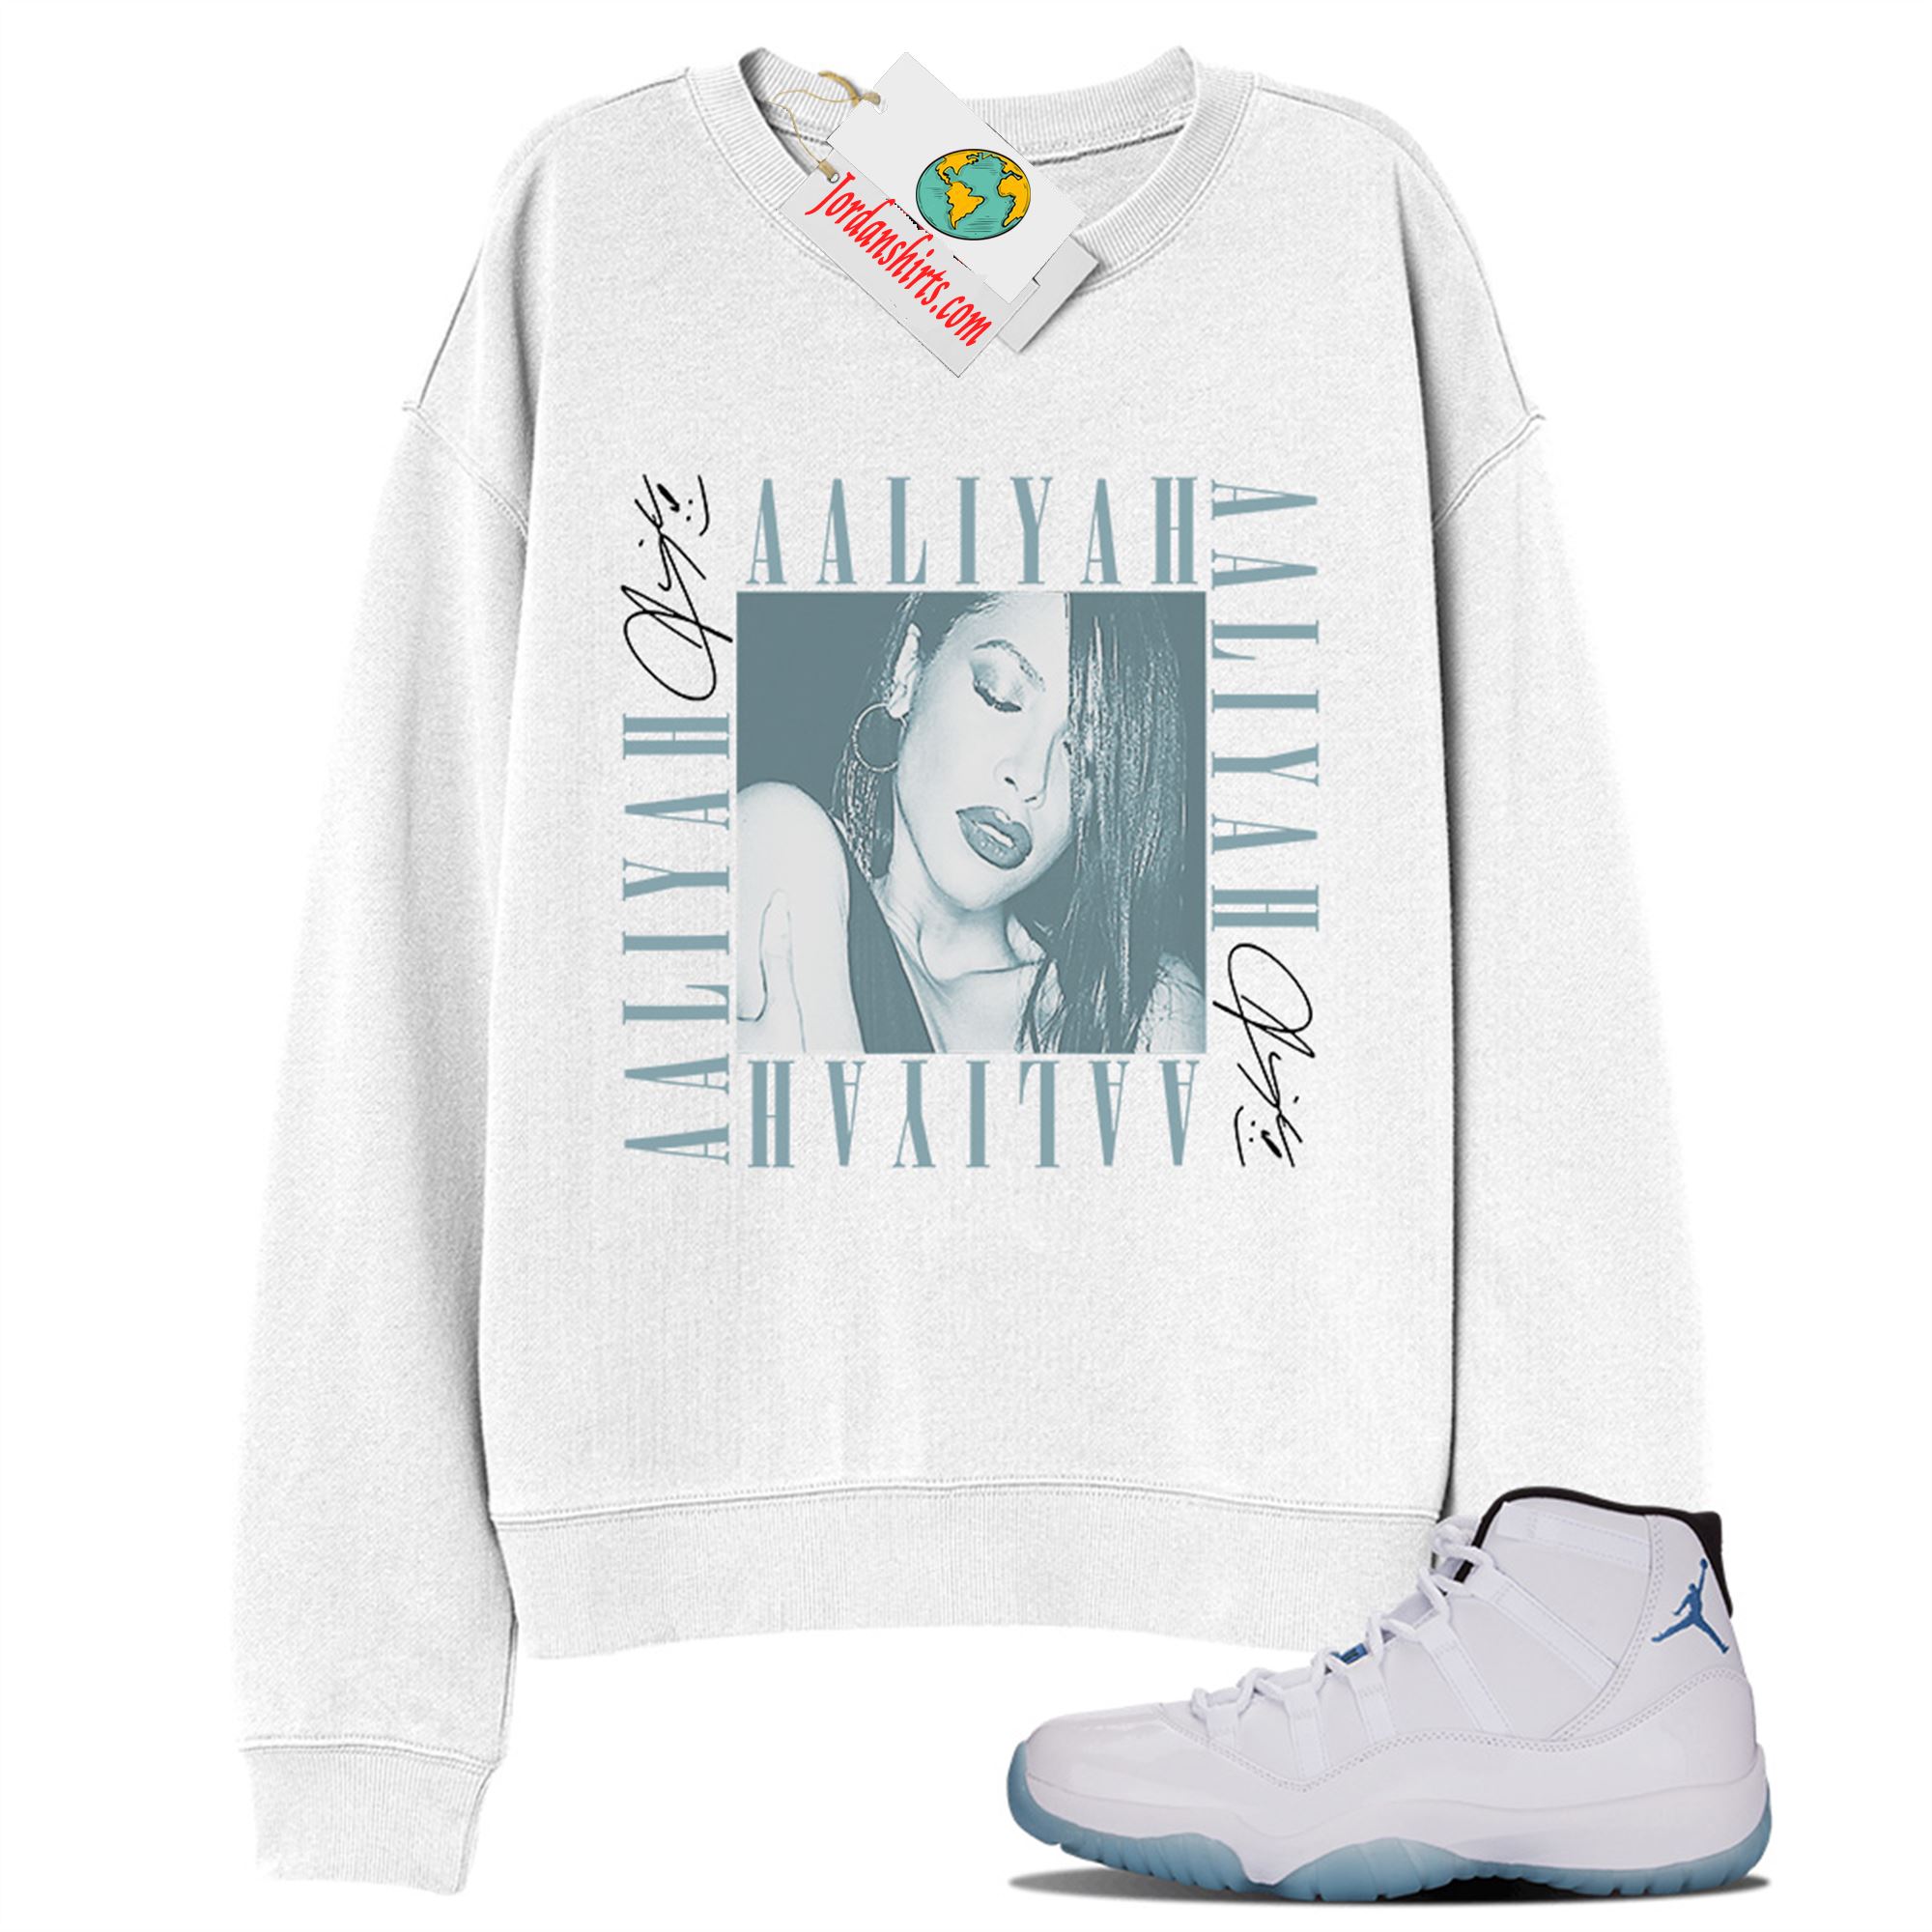 Jordan 11 Sweatshirt, Aaliyah Box White Sweatshirt Air Jordan 11 Legend Blue 11s Plus Size Up To 5xl